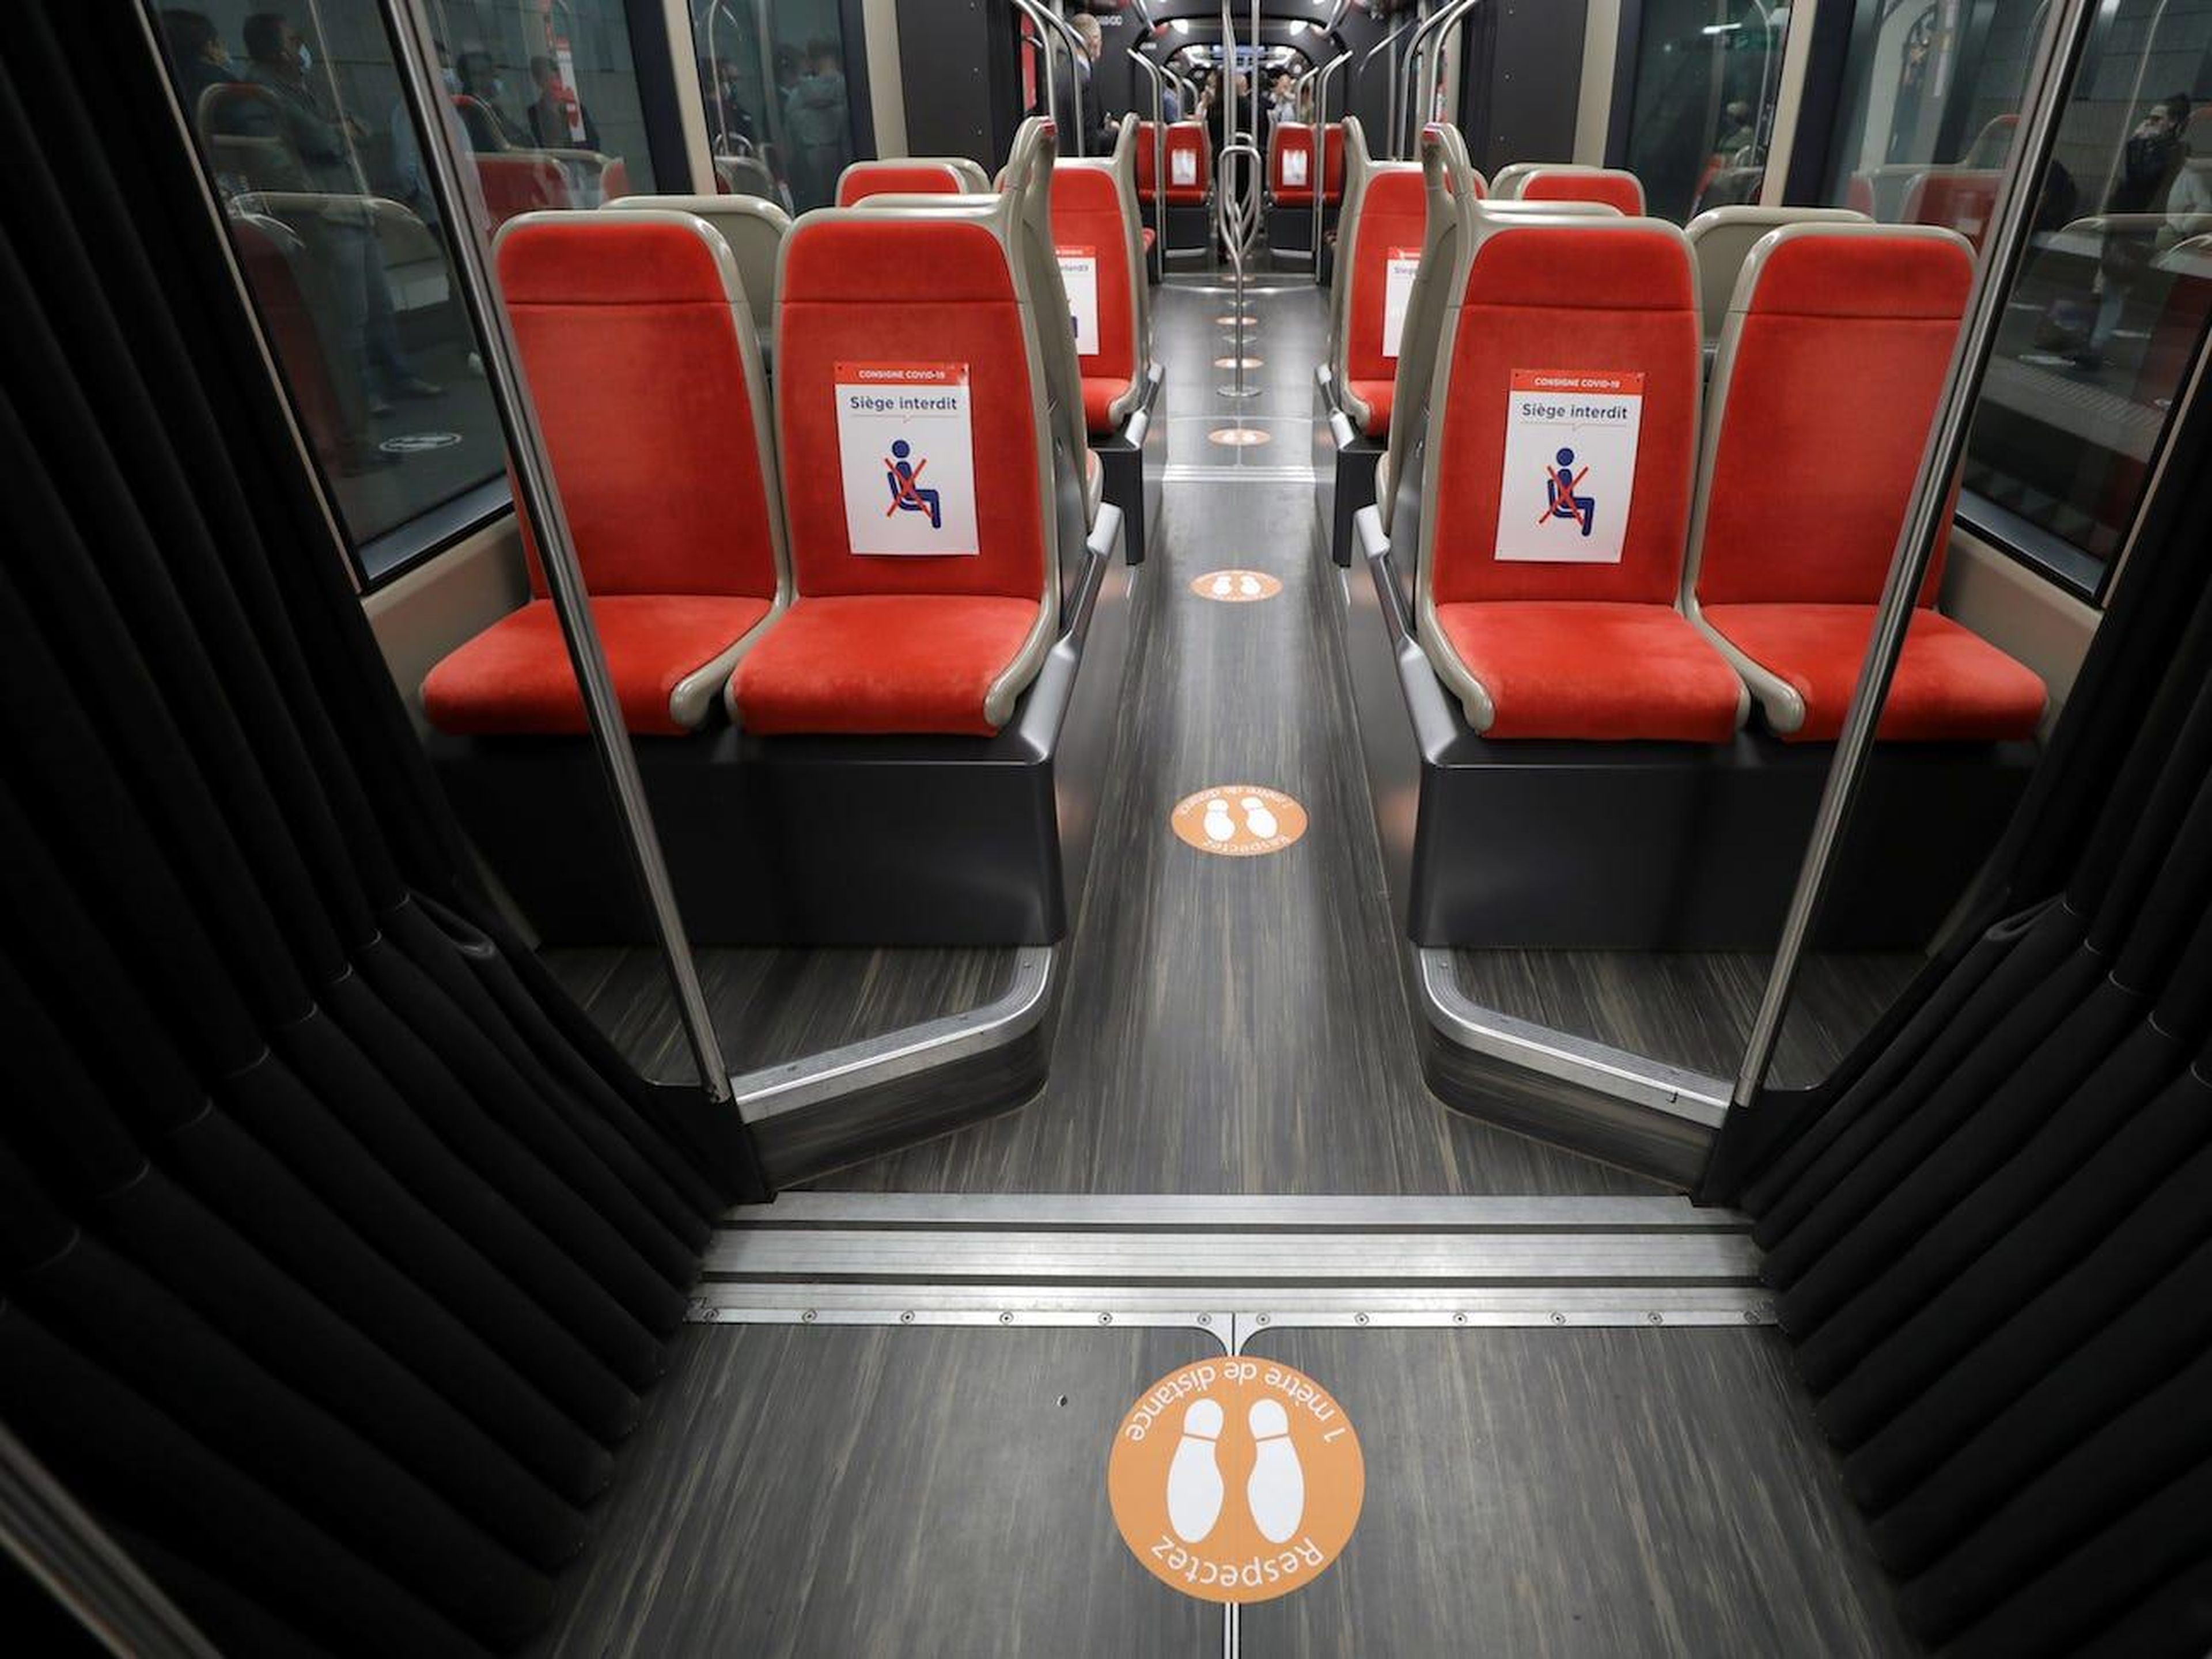 Círculos en el suelo que indican dónde sentarse y estar de pie en un tranvía en Niza, Francia, el 6 de mayo.